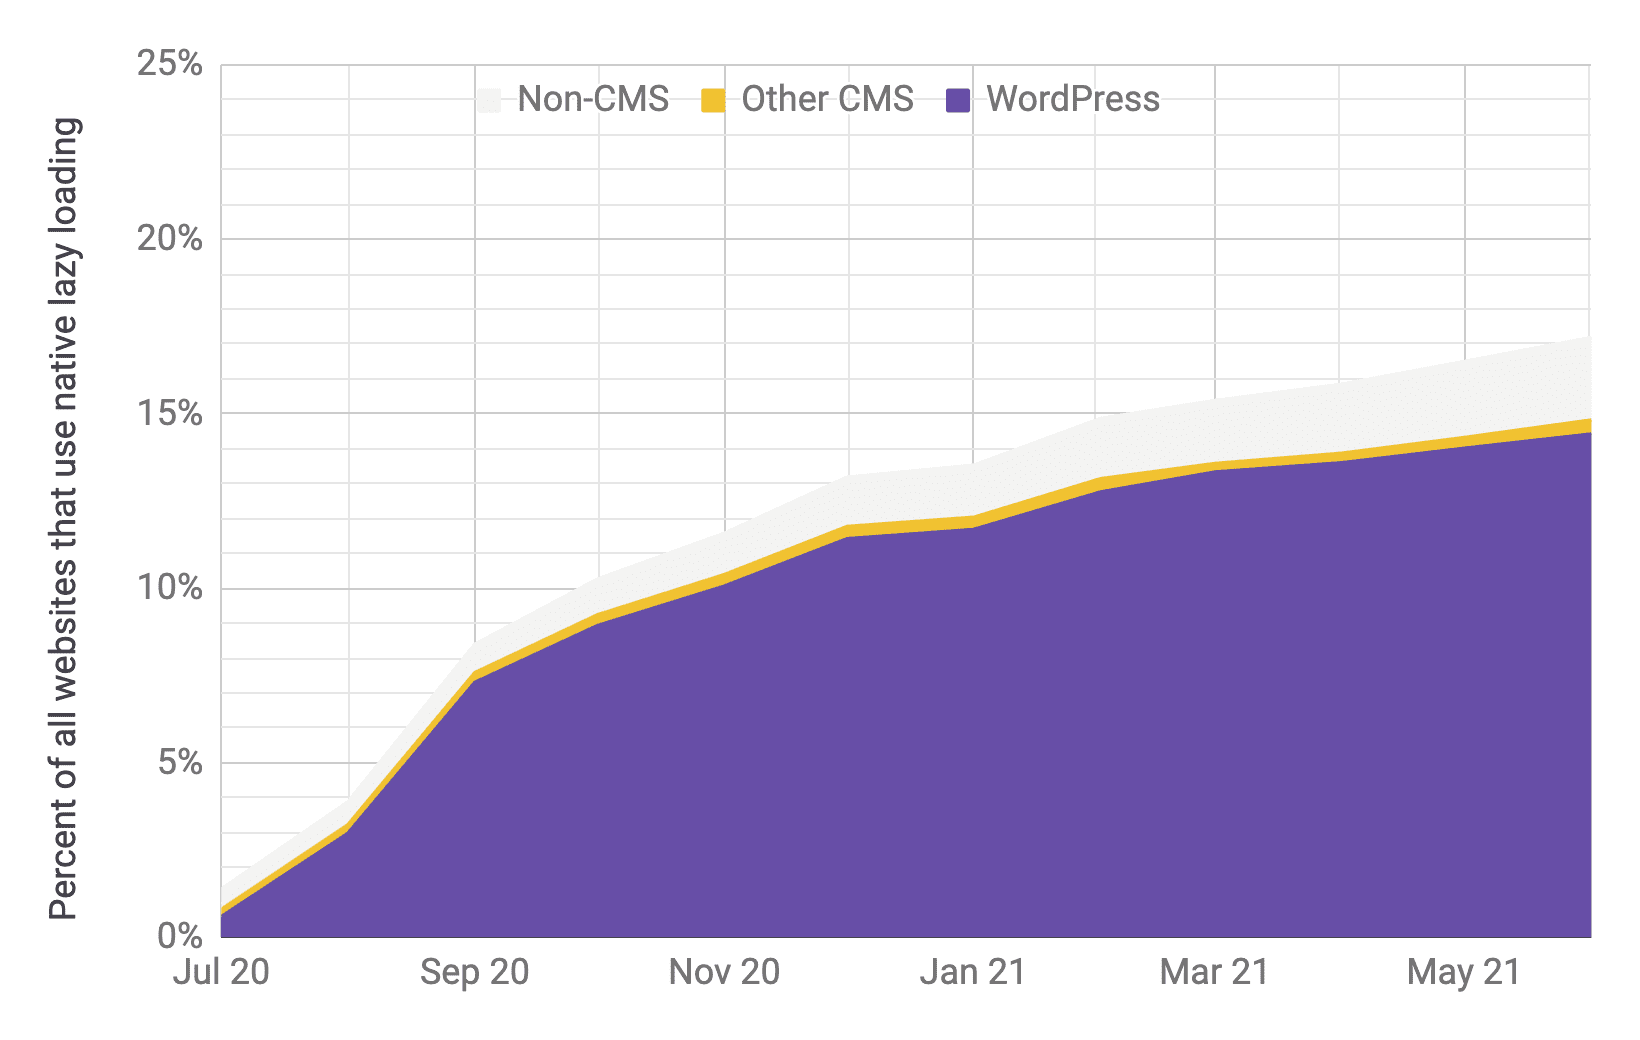 תרשים Timeseries של אימוץ טעינה מושהית שבו WordPress היא השחקנית העיקרית בהשוואה למערכות ניהול תוכן אחרות ולמערכות ניהול תוכן אחרות, עם פרופורציות דומות לתרשים הקודם. שיעור האימוץ הכולל גדל במהירות מ-1% ל-17% מיולי 2020 עד יוני 2021.